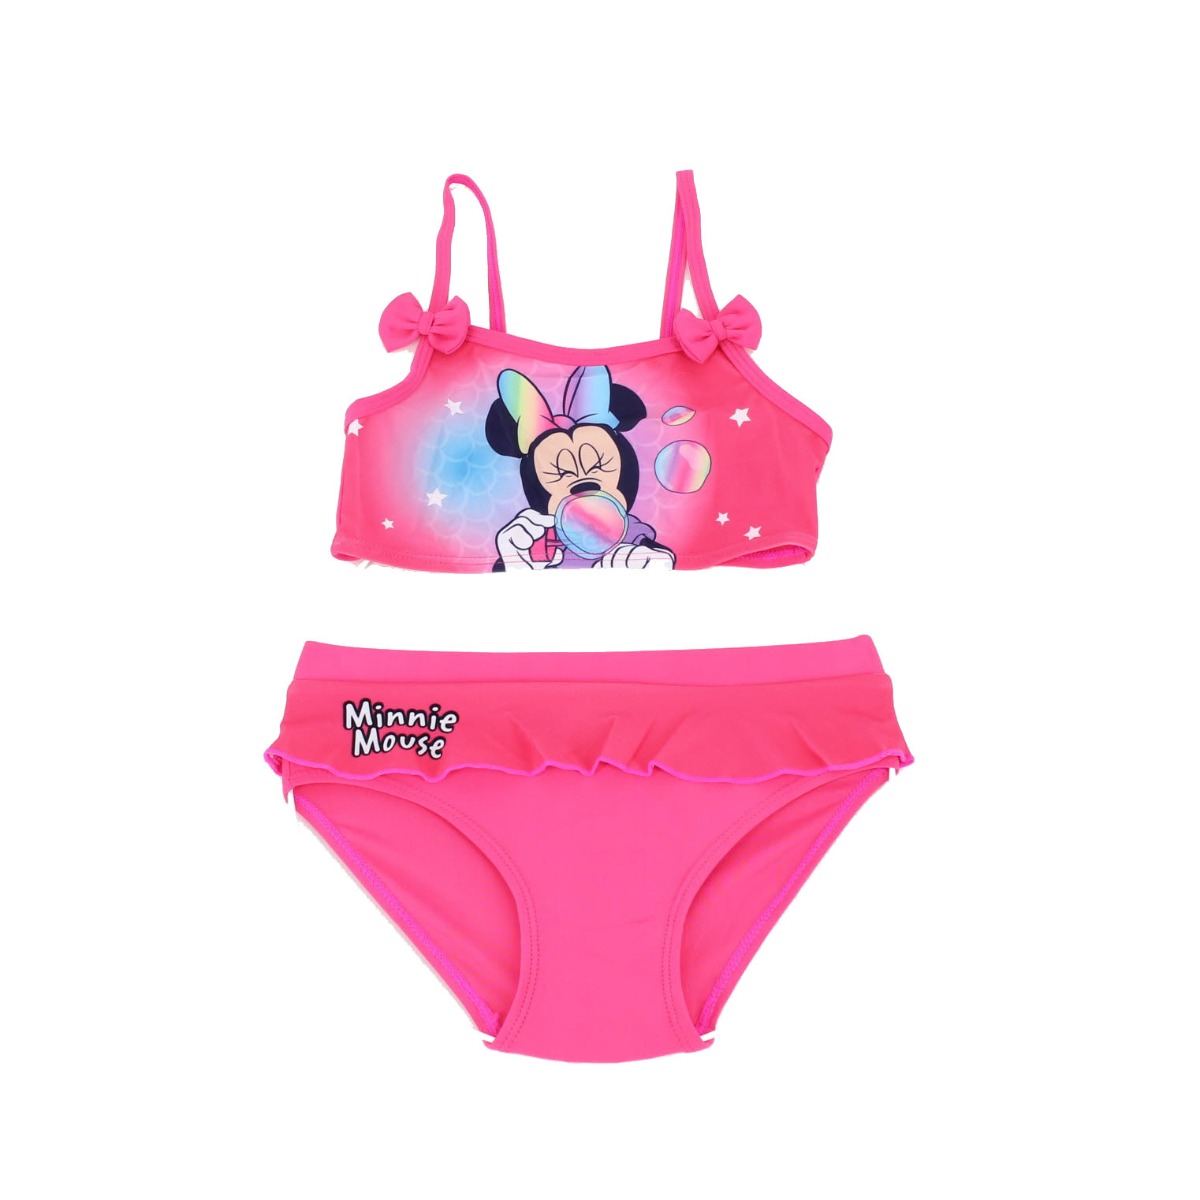 Disney Minnie mintás fürdőruha